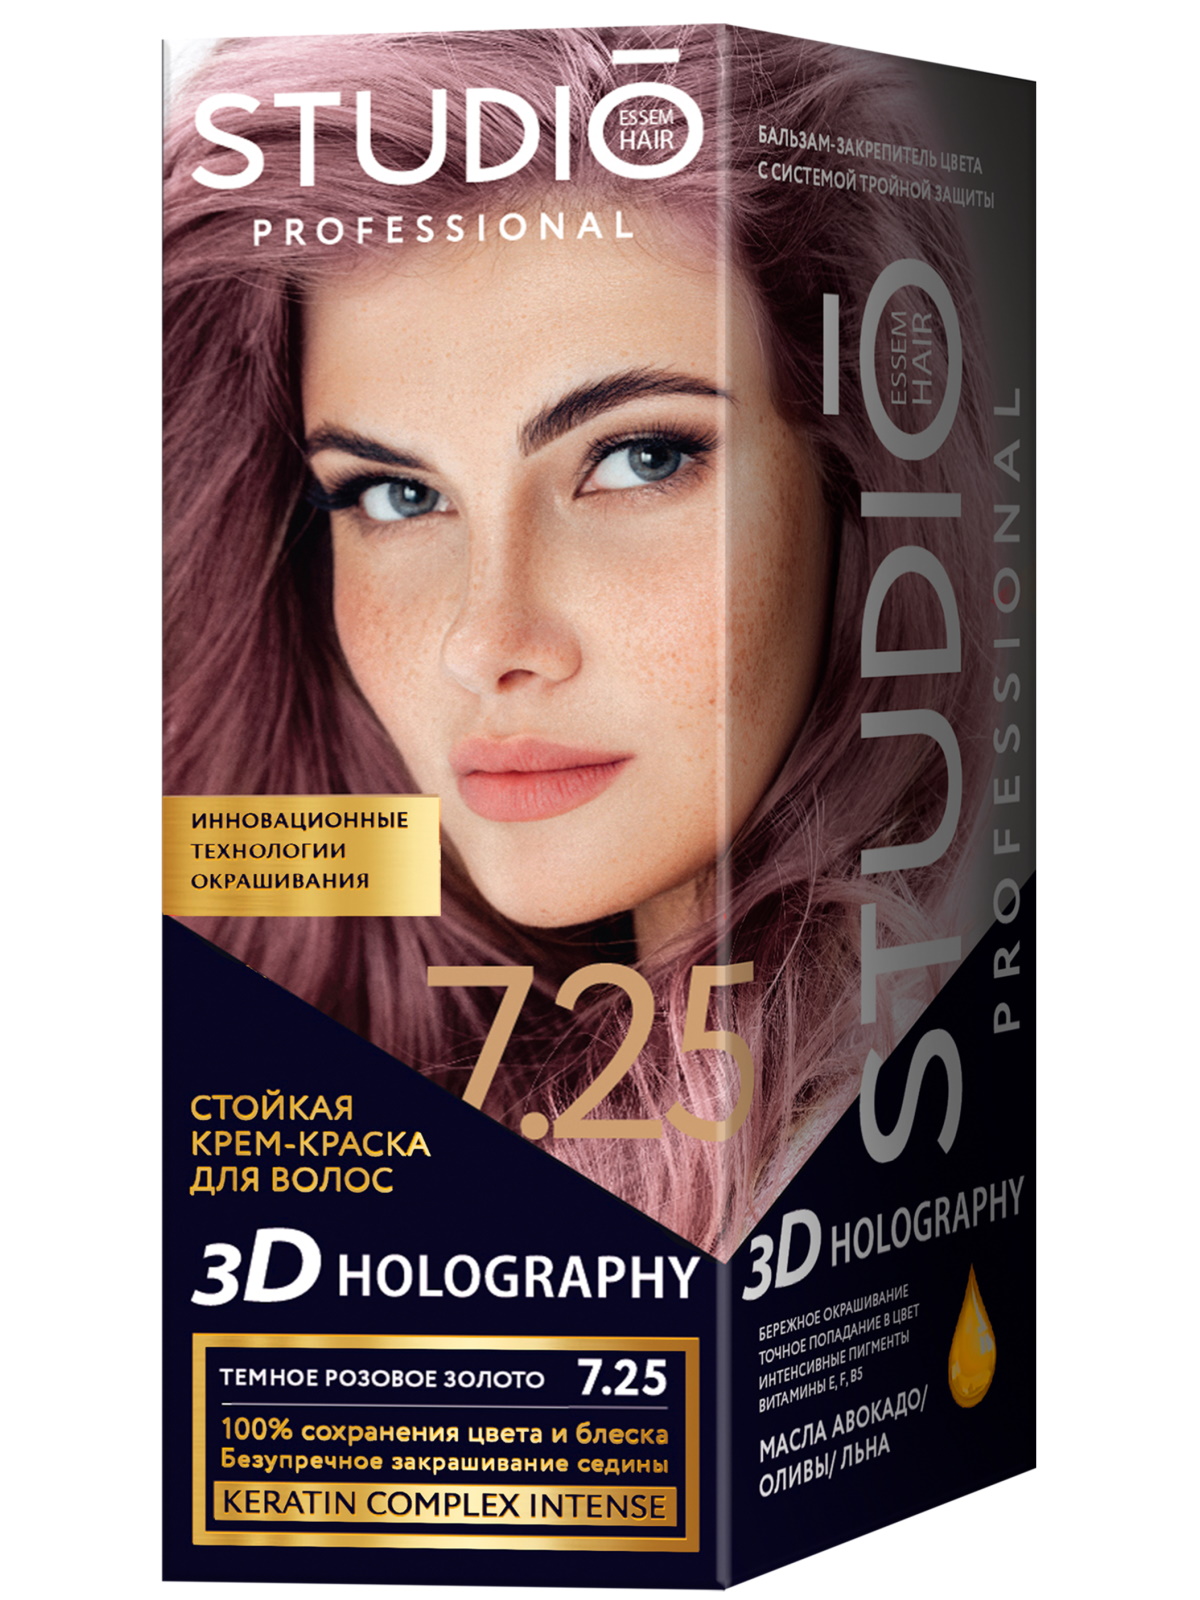 Комплект 3D HOLOGRAPHY STUDIO PROFESSIONAL 7.25 темное розовое золото 2*50+15 мл studio professional стойкая крем краска для волос 3d holography